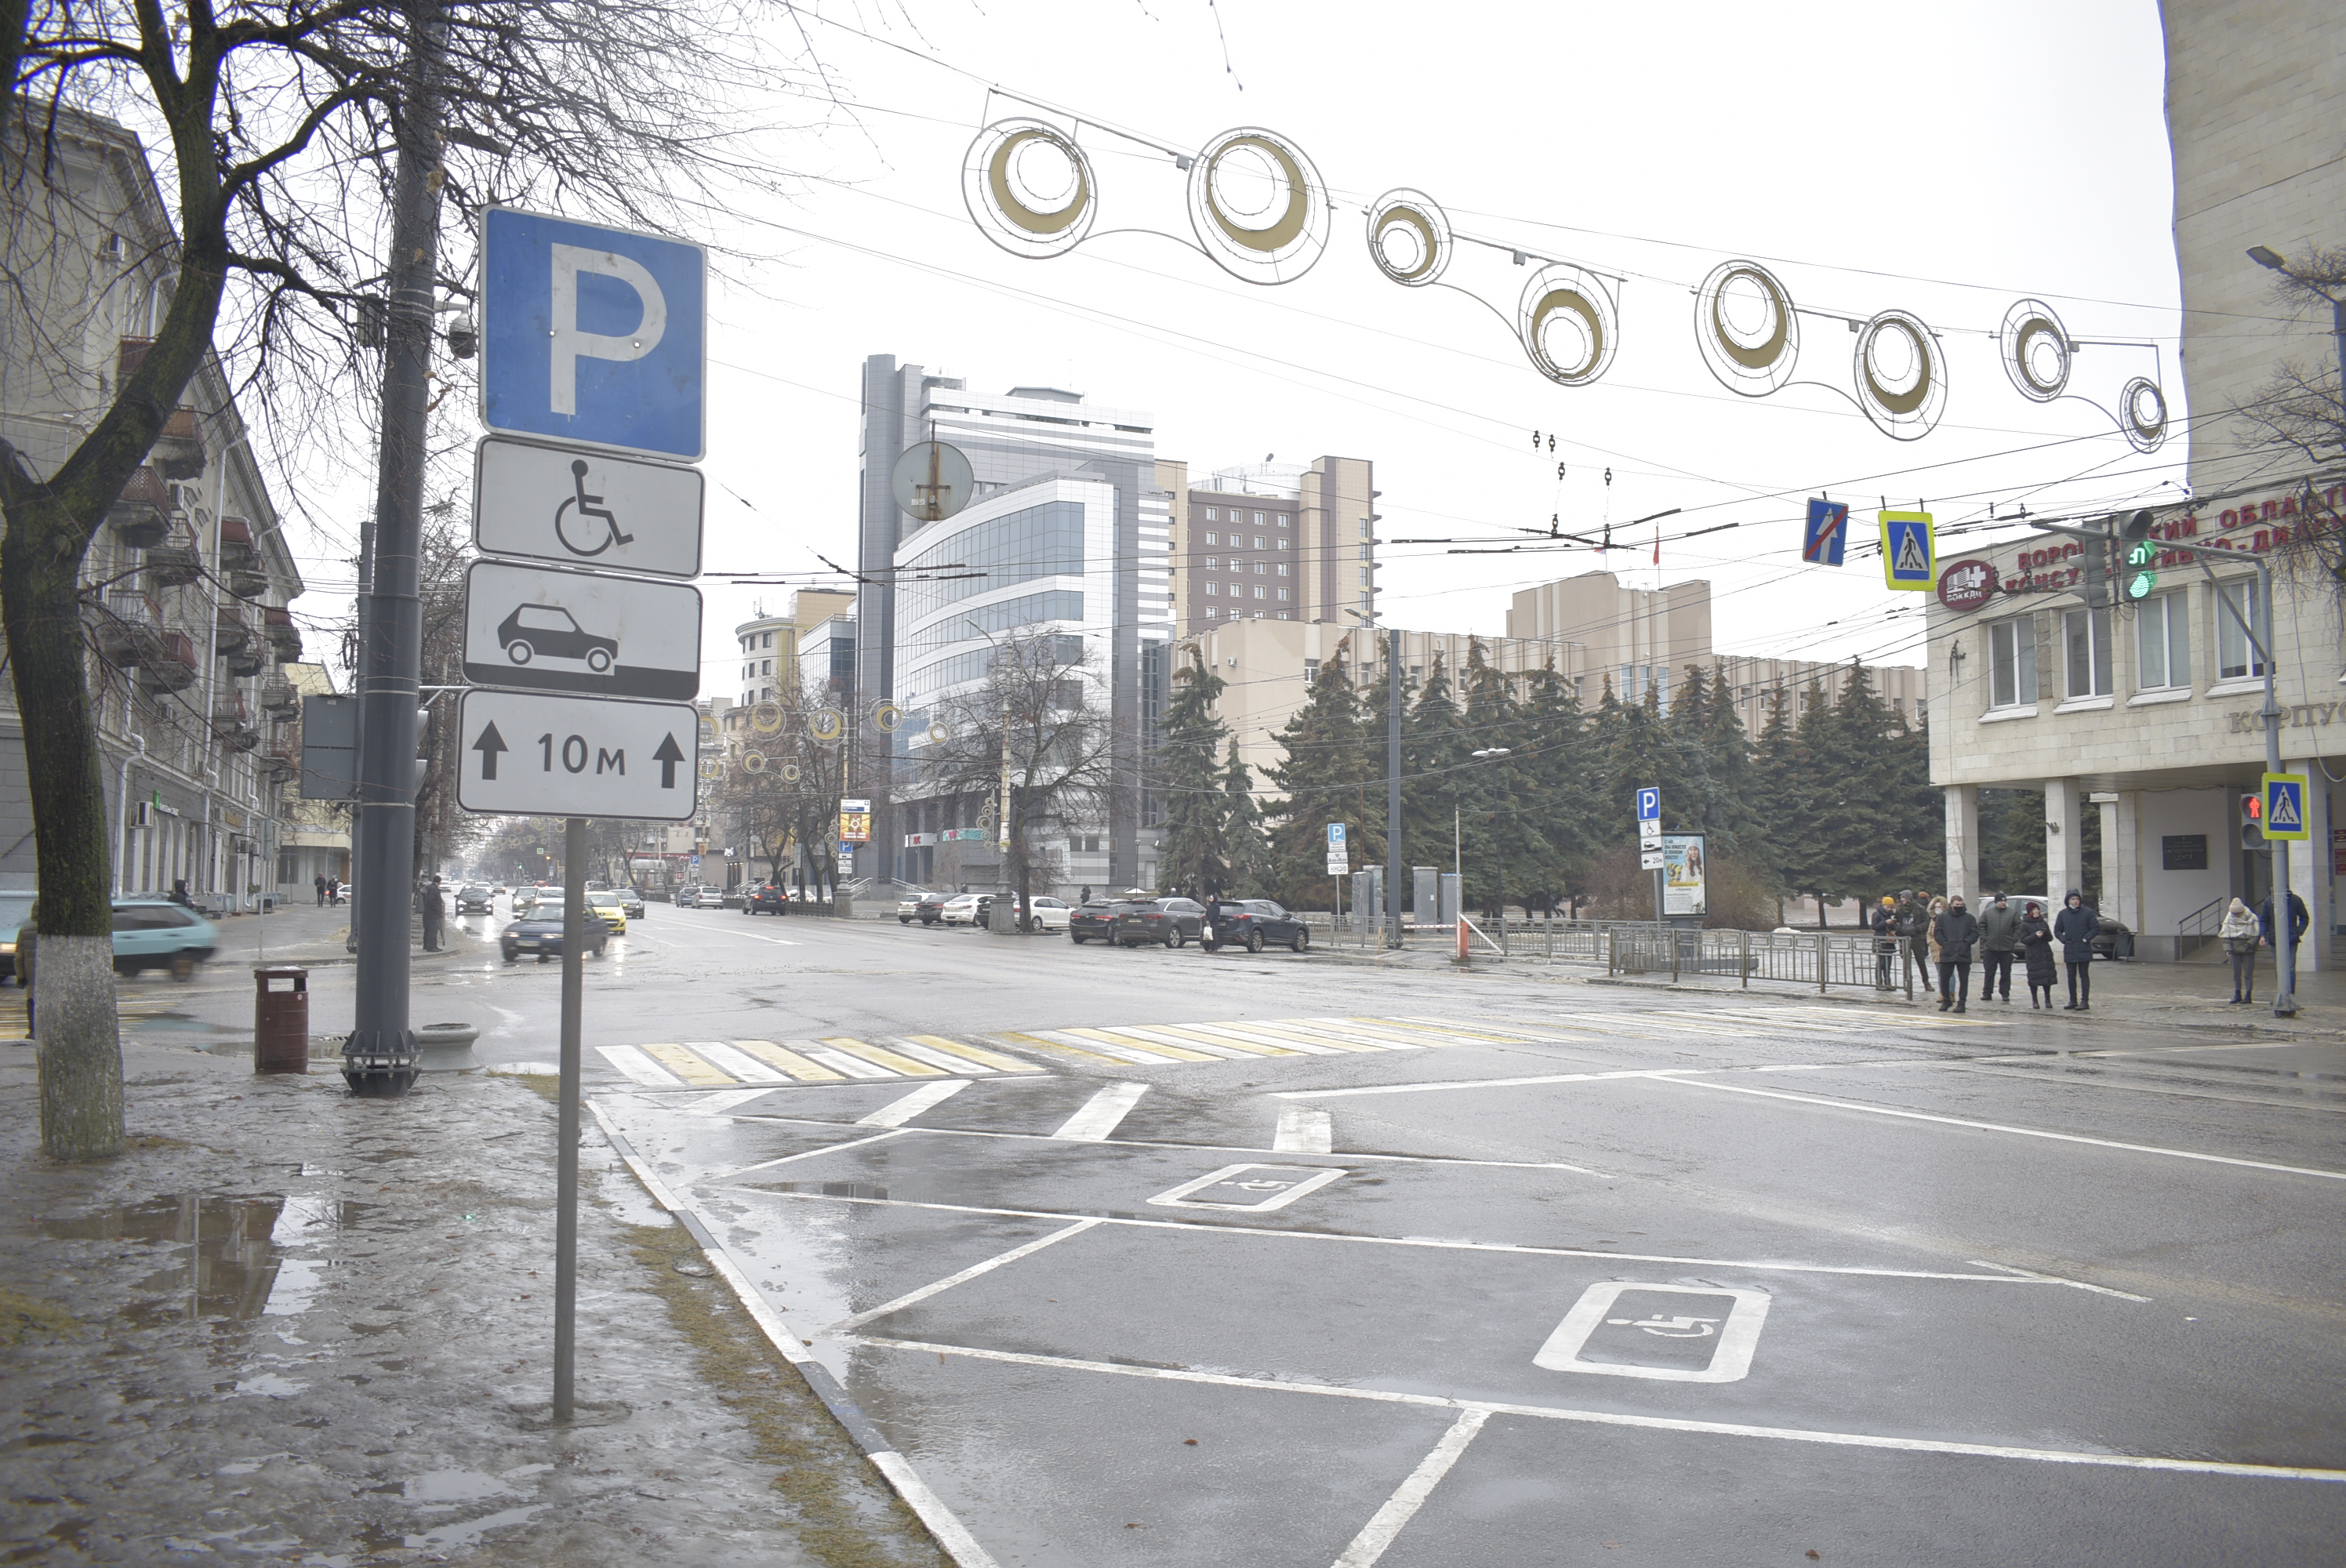 Какими методами можно решить проблему с парковками в Воронеже? - фото 5